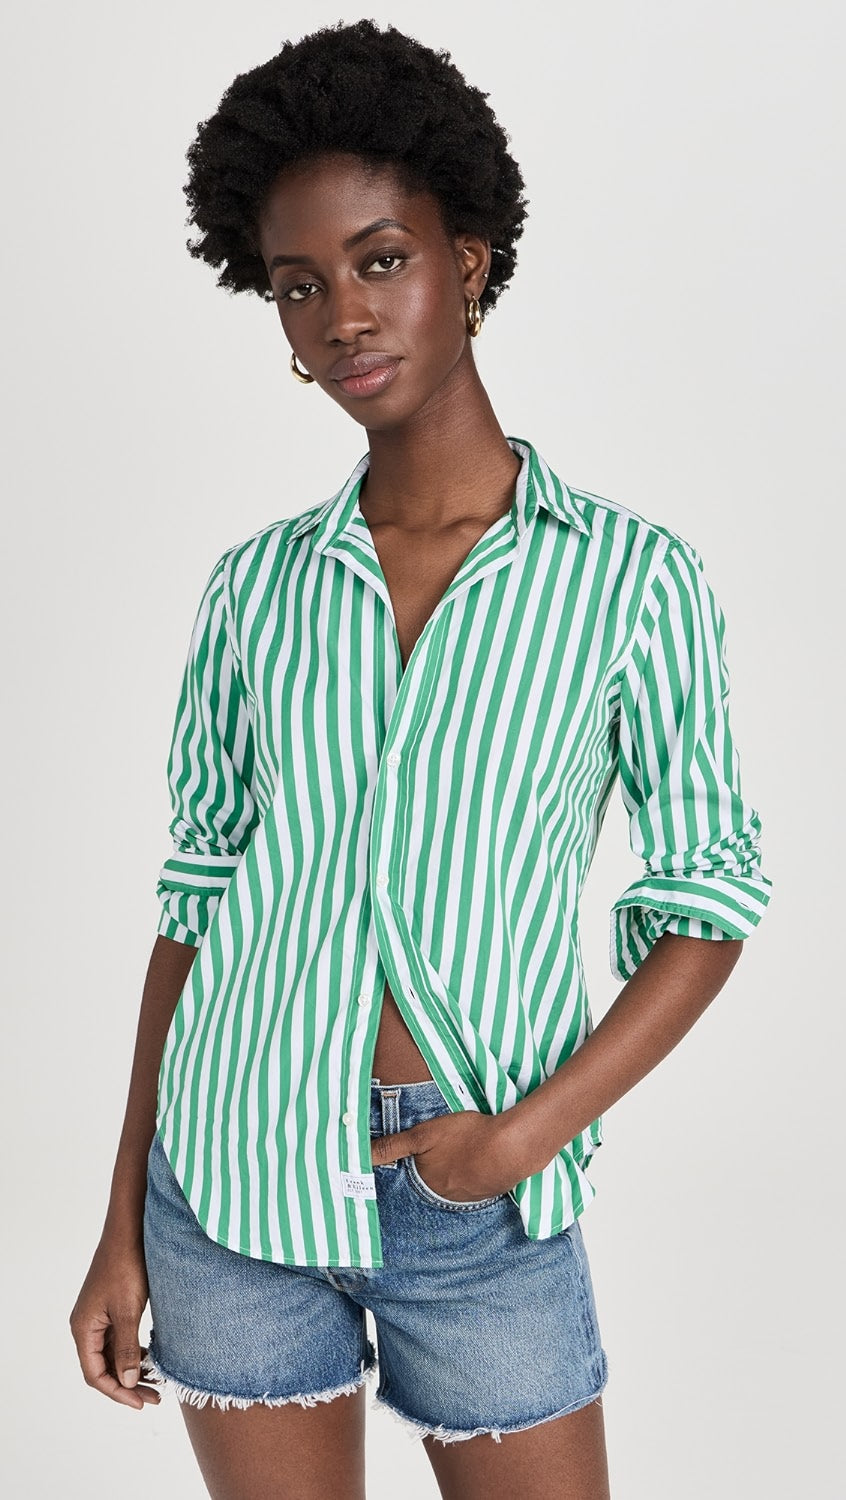 Frank & Eileen Frank Classic Button-Up Shirt - Wide Green Stripe